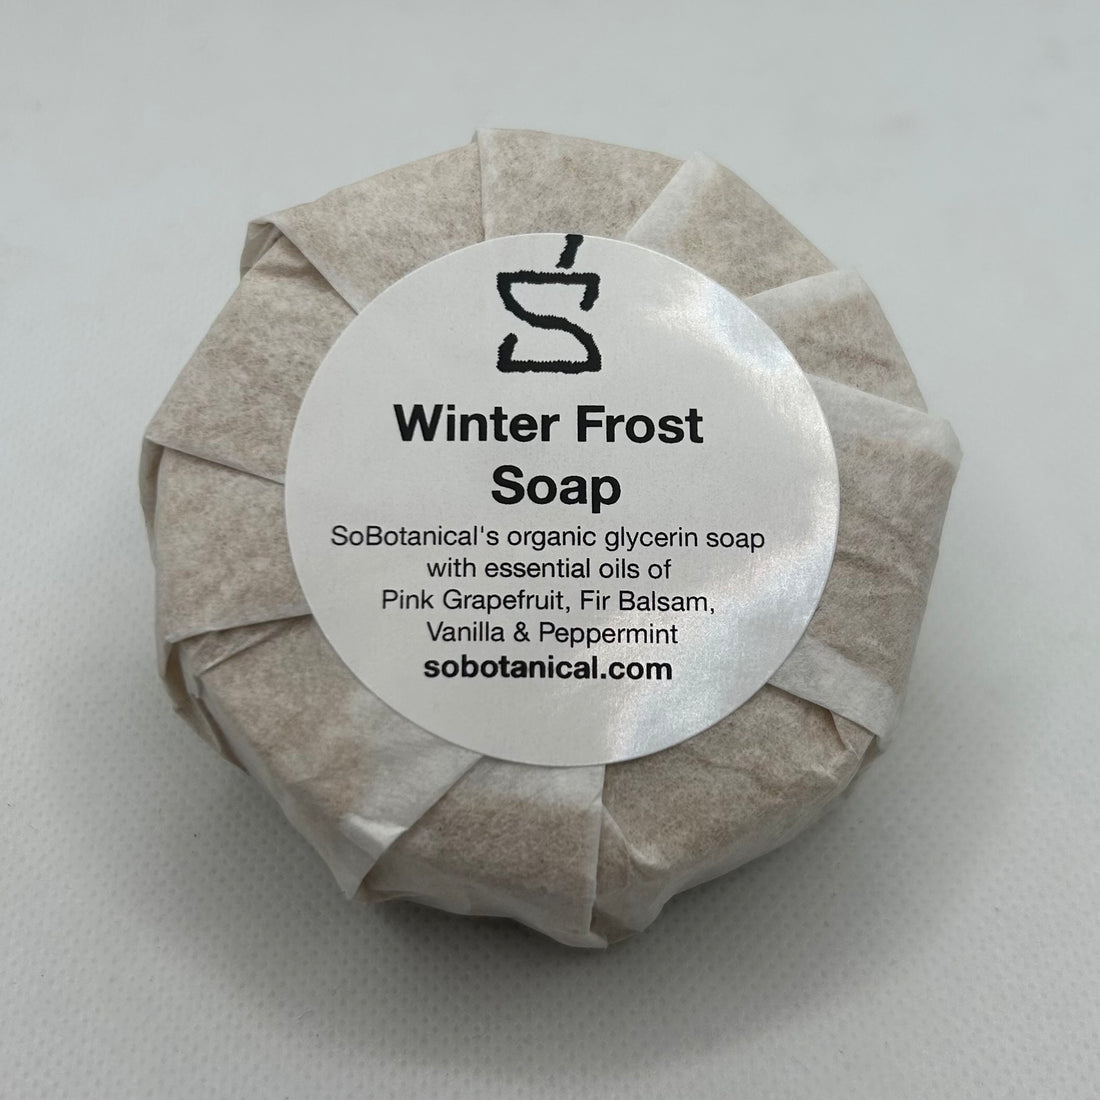 Winter Frost Soap